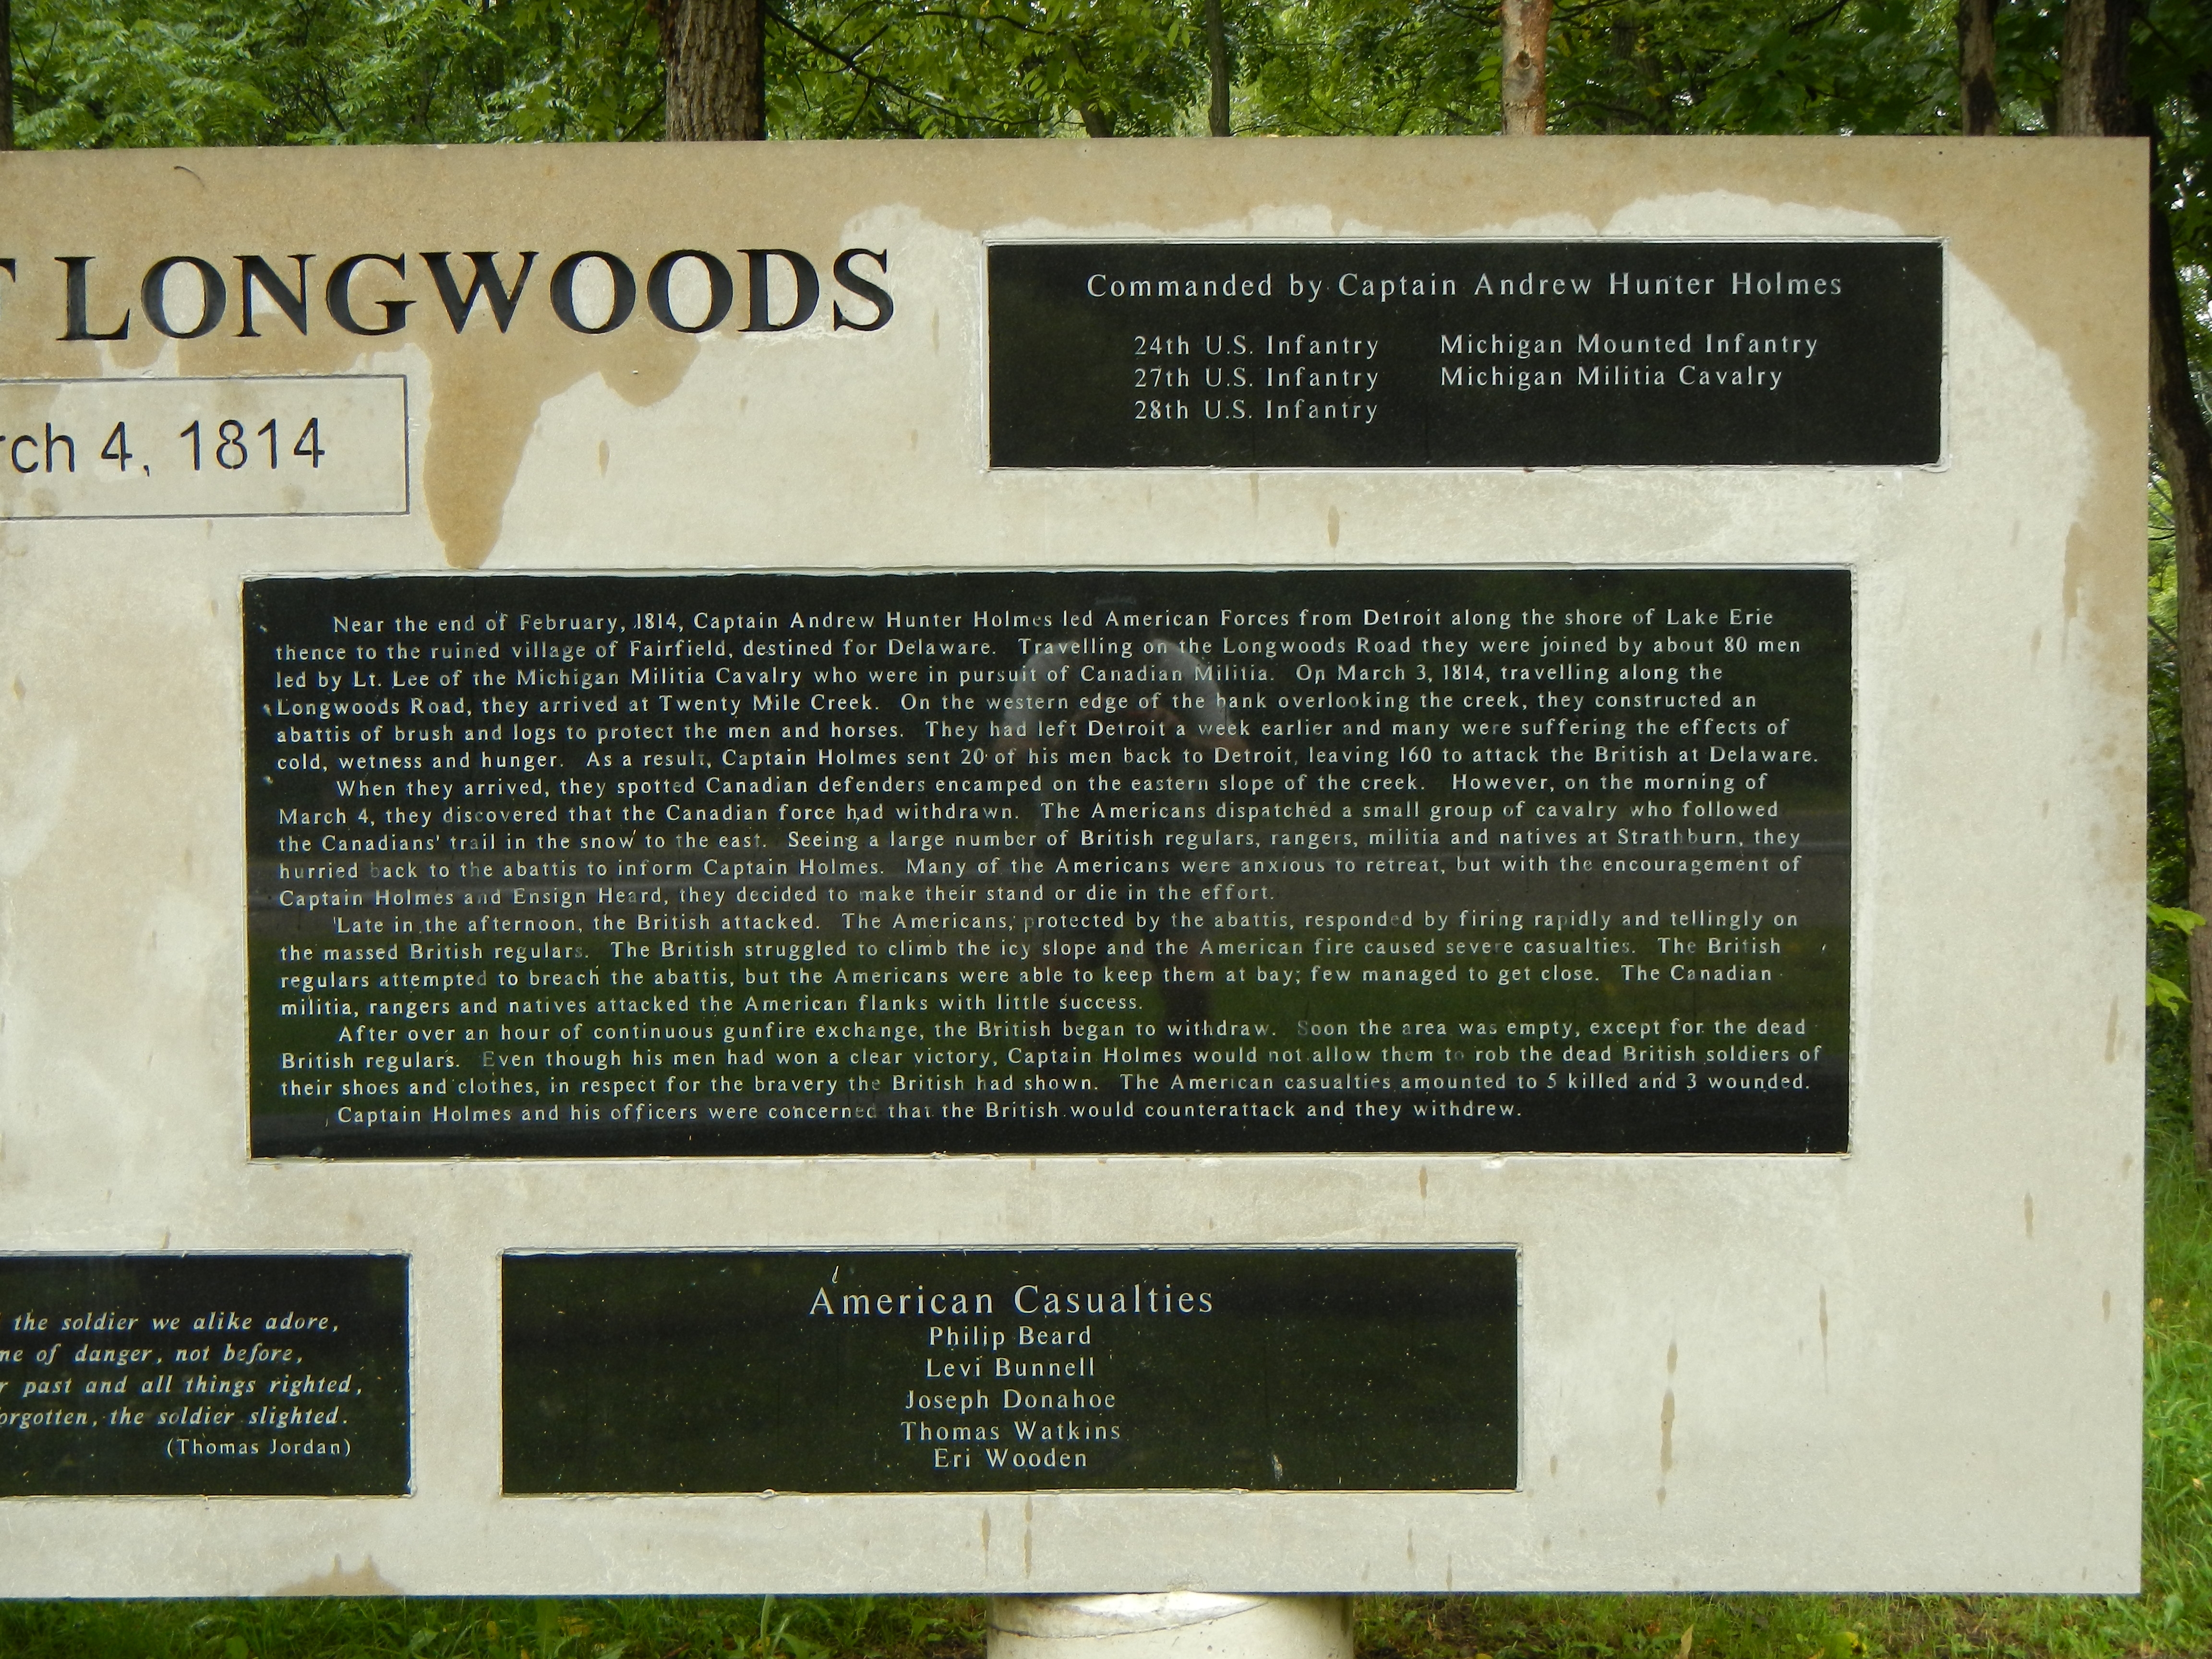 Battle of Longwoods Marker (right side)